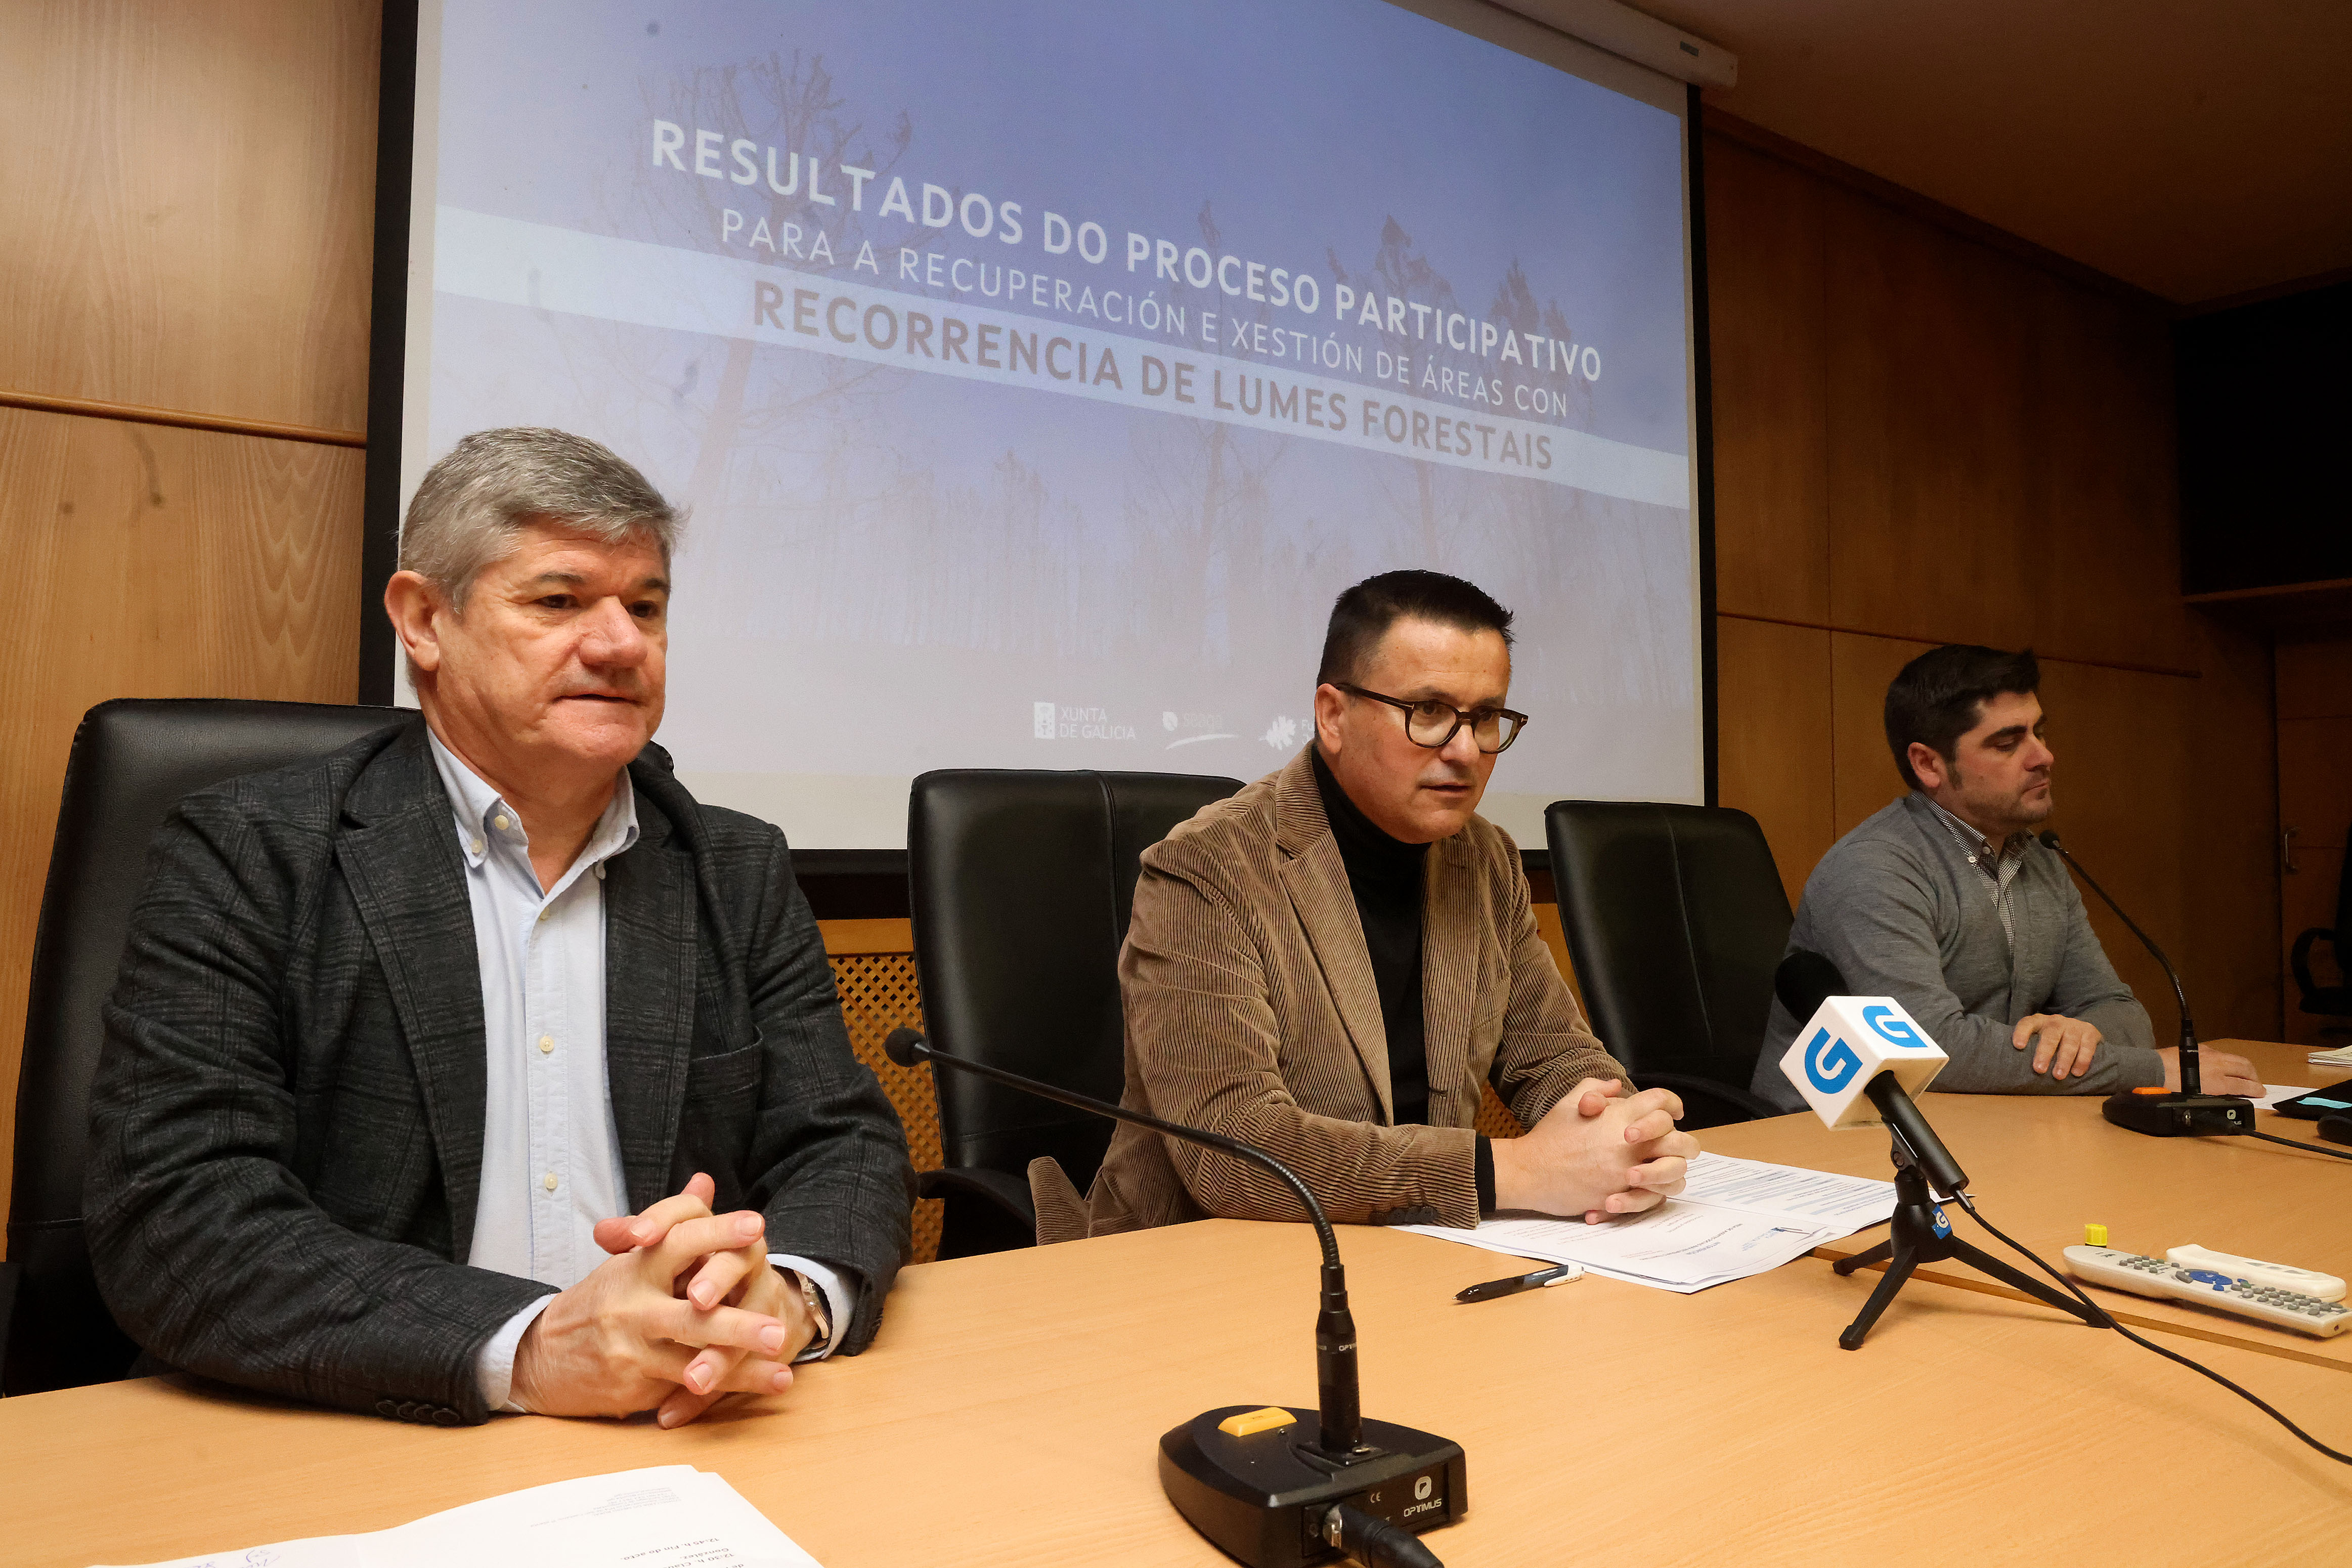 A Xunta anuncia que vai impulsar un plan para rehabilitar áreas afectadas por incendios